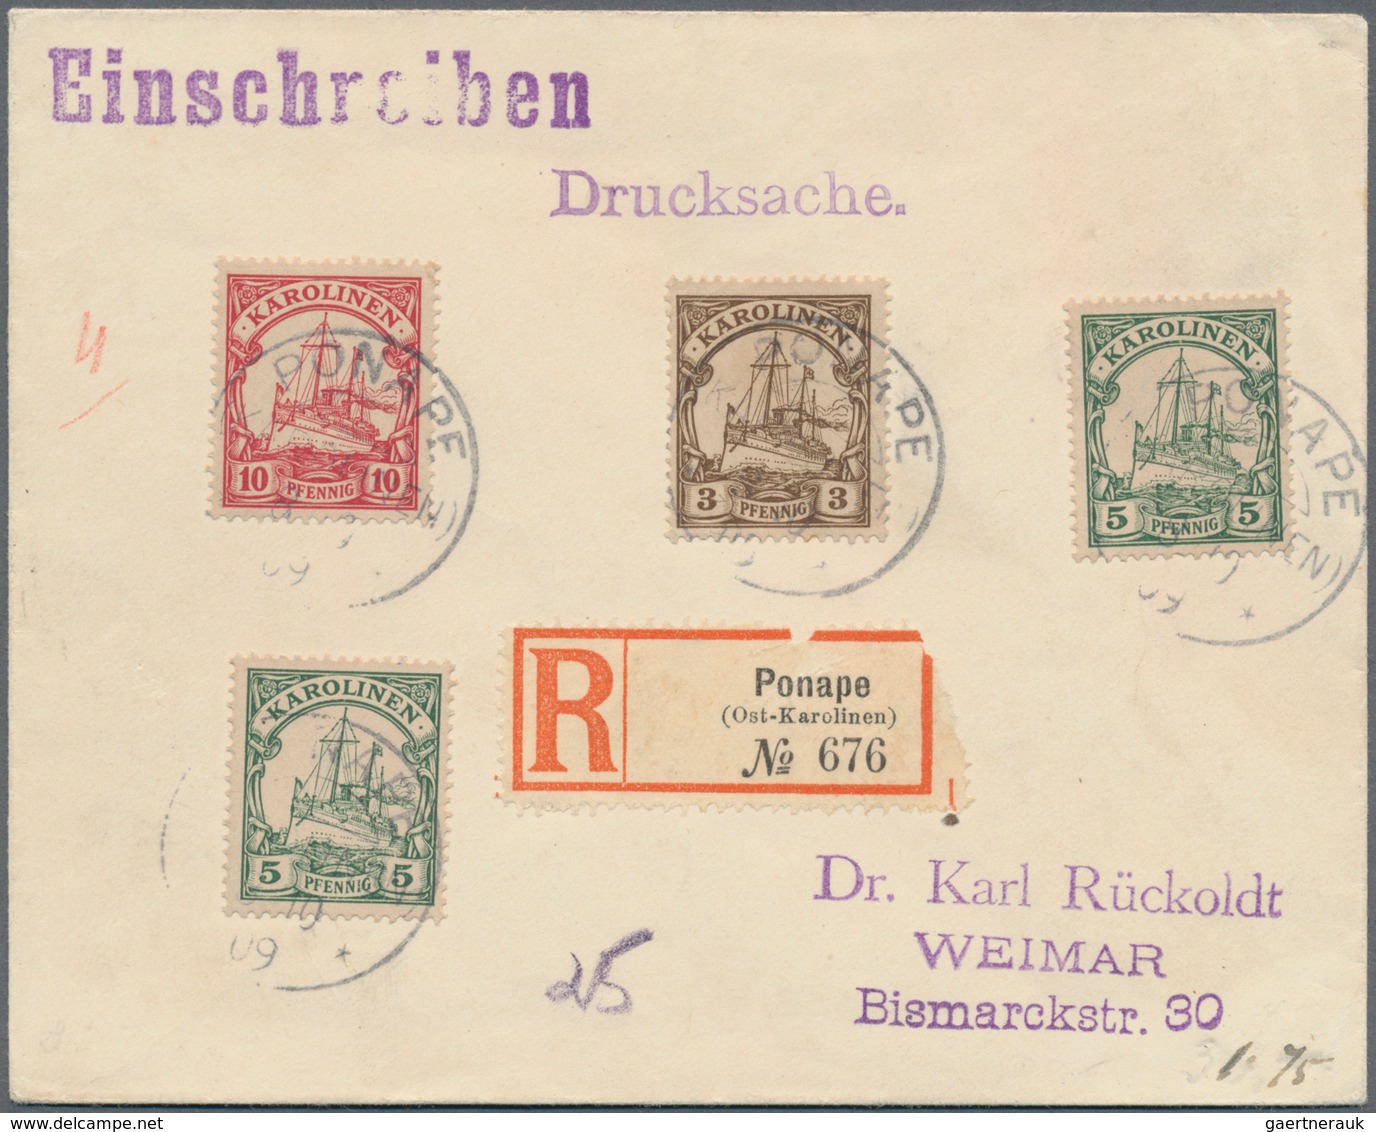 Deutsche Kolonien - Karolinen - Stempel: 1900/1914, Partie mit 25 Briefen, Karten und Ganzsachen, da